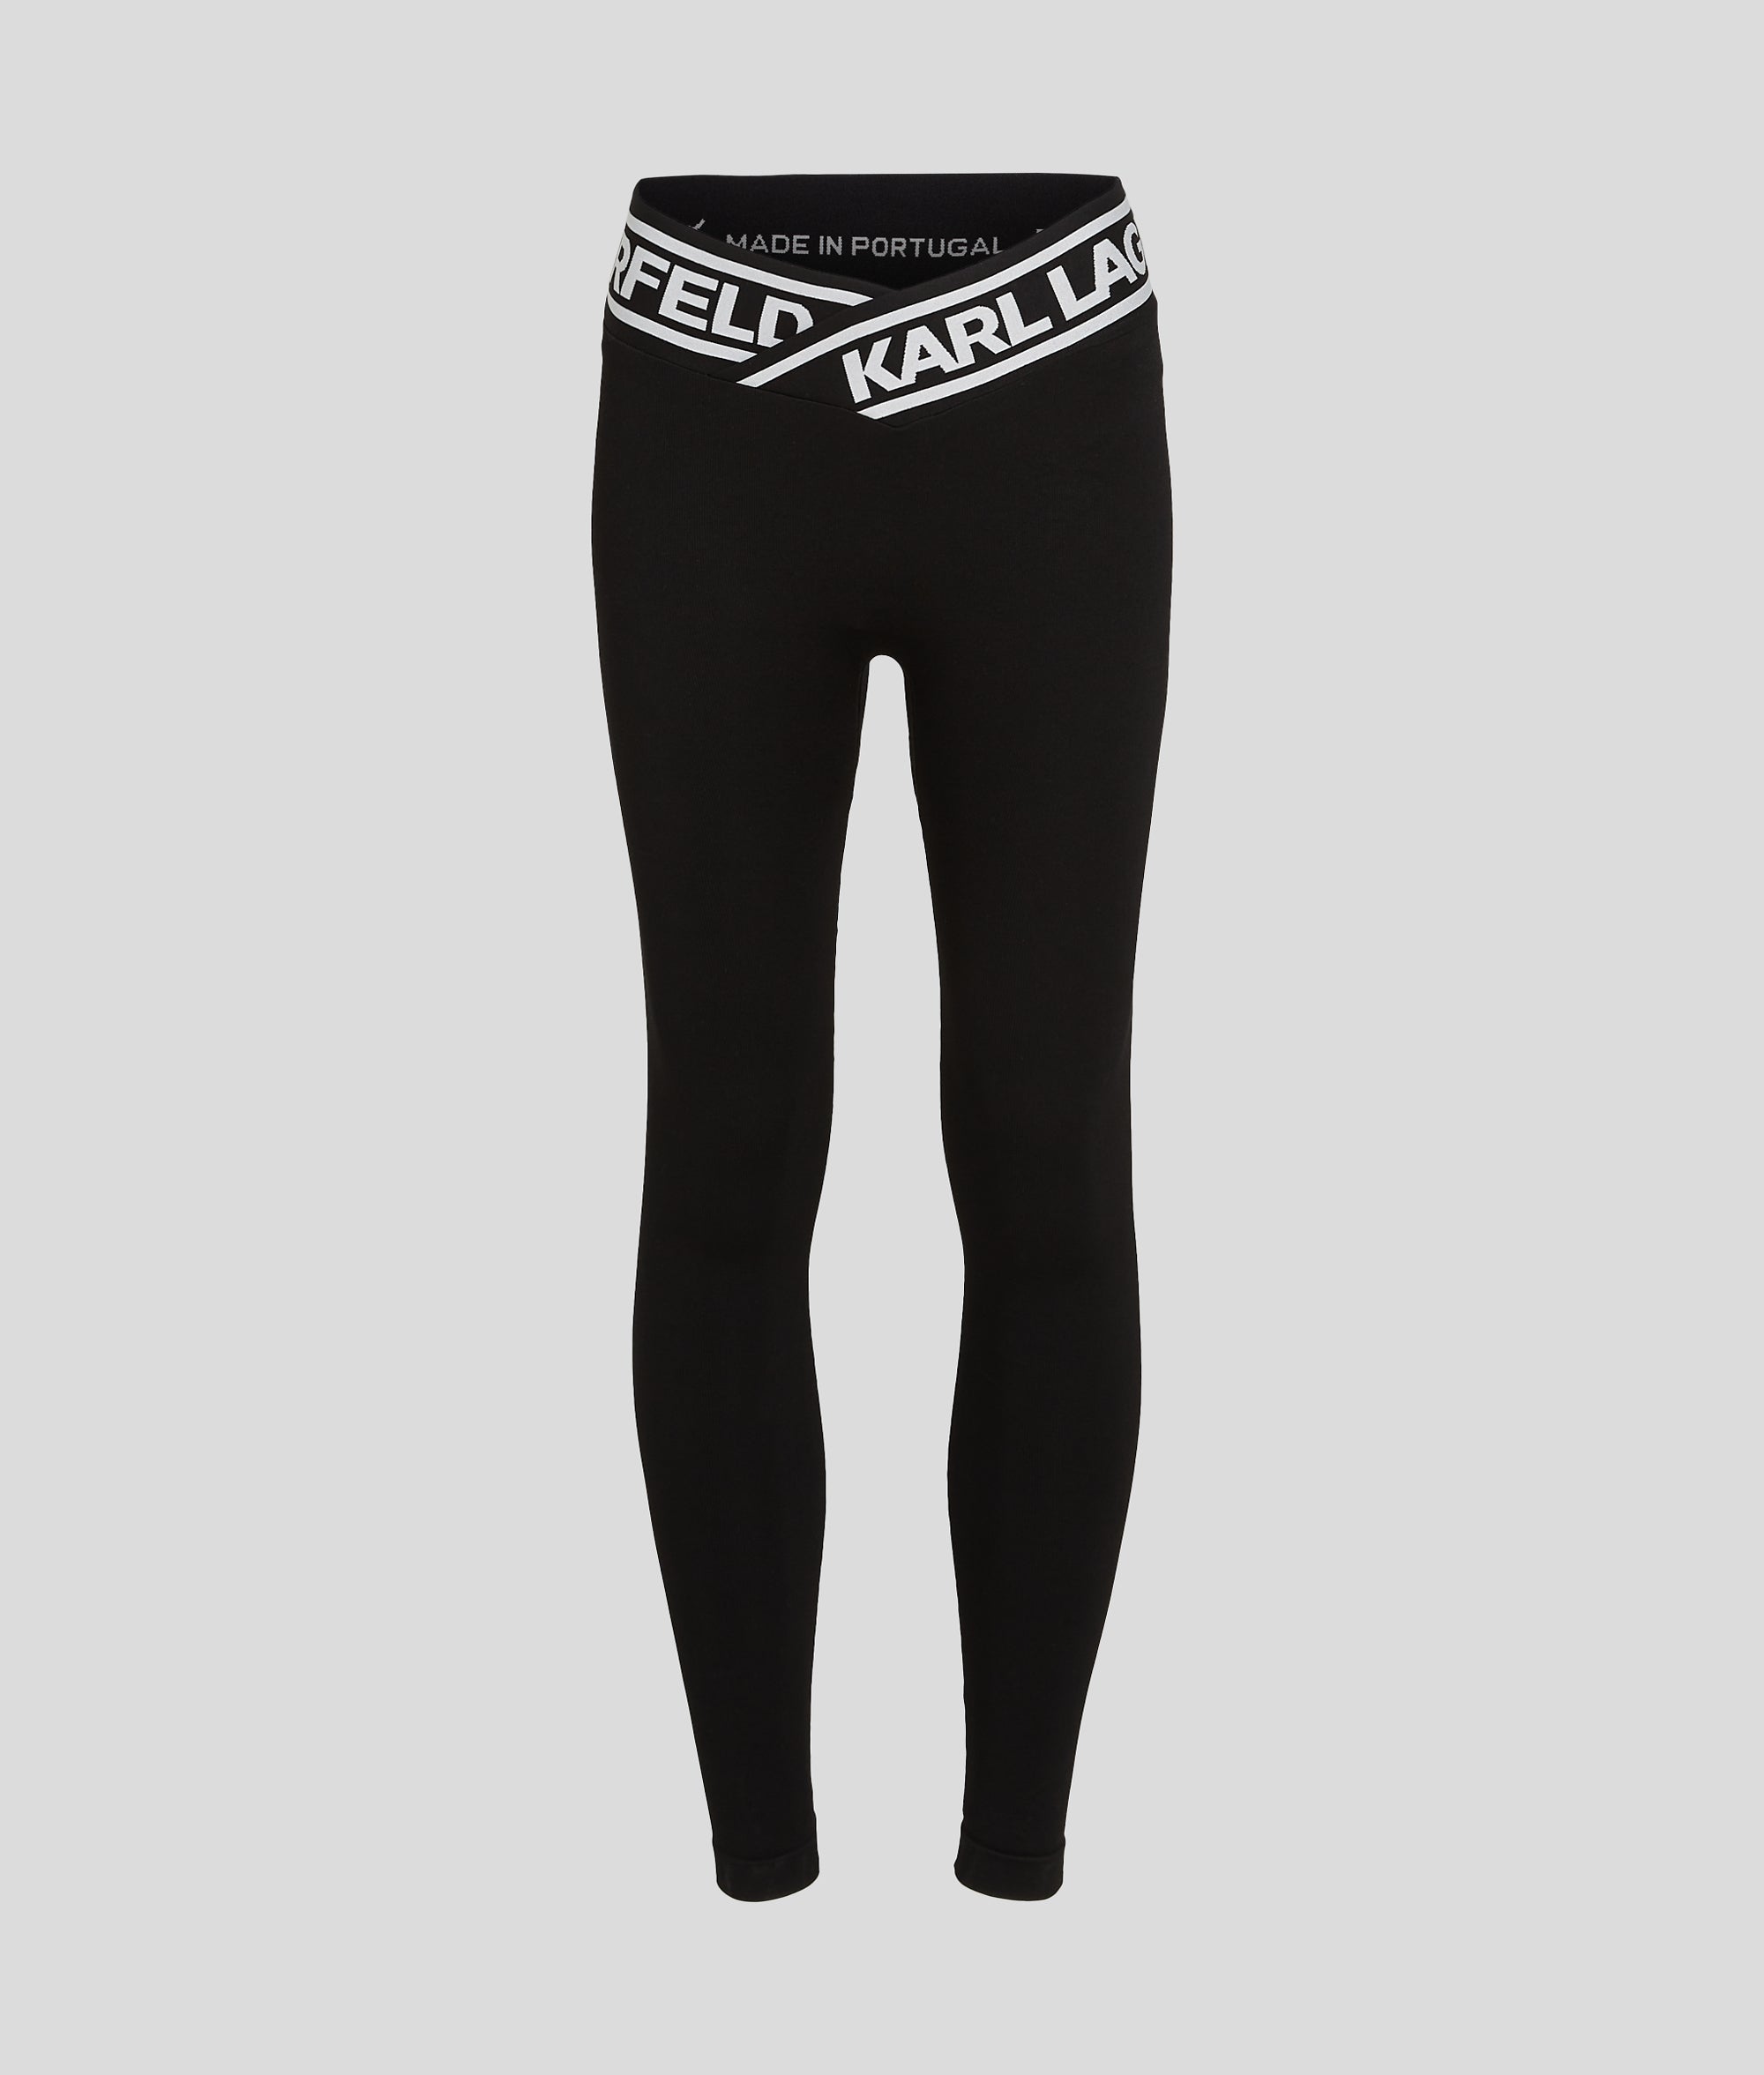 Karl Lagerfeld Polyester Athletic Leggings for Women